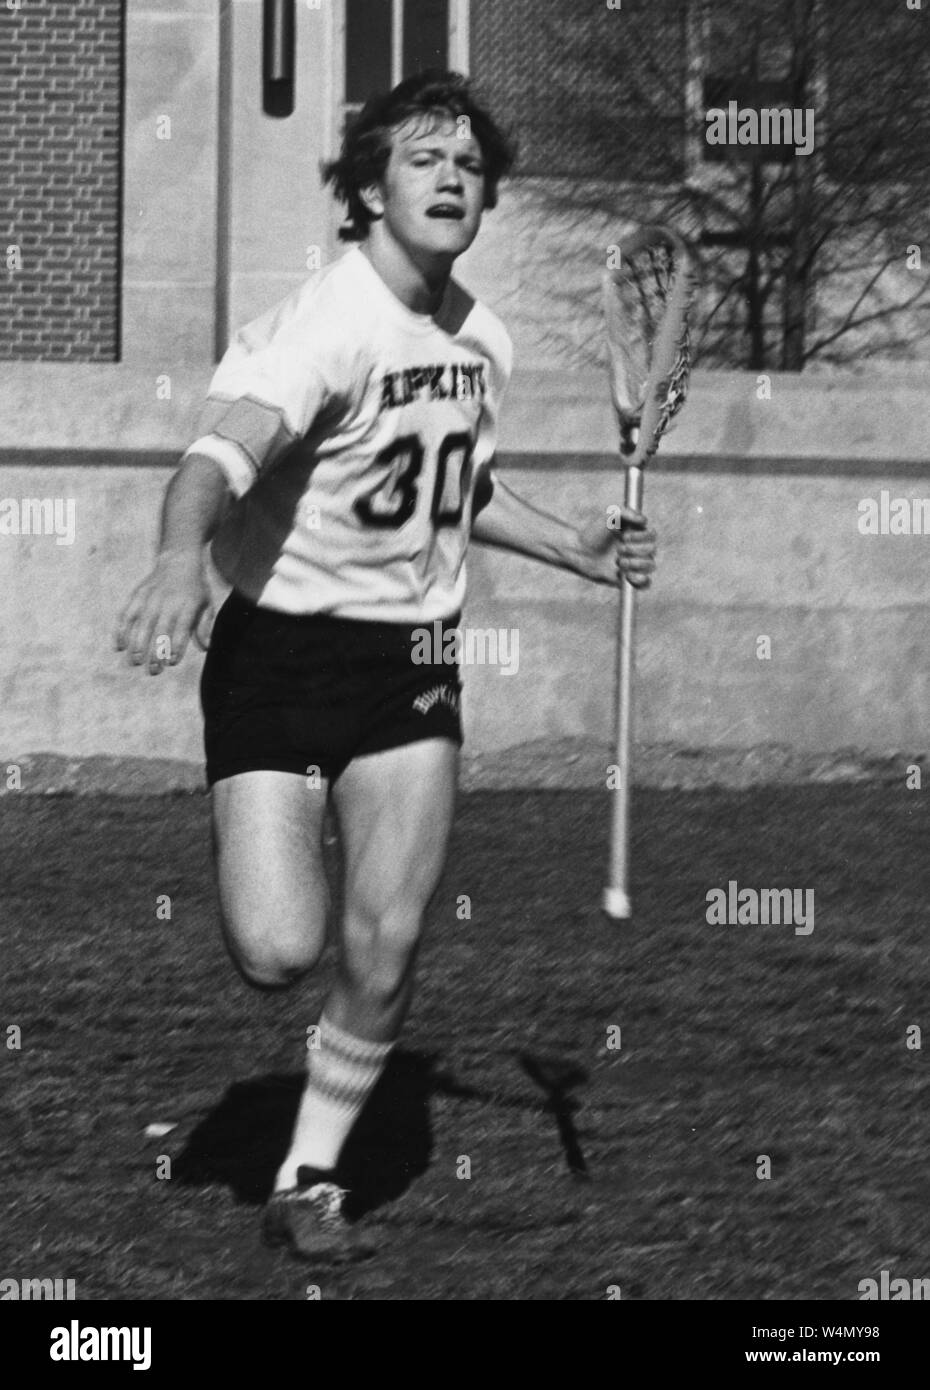 La Johns Hopkins crosse Jack Thomas, dans Hopkins short et jersey, exécutant avec son bâton de crosse dans sa main gauche sur le terrain, avec une expression du visage grave, 1977. À partir de la Collection de photographies historiques. () Banque D'Images